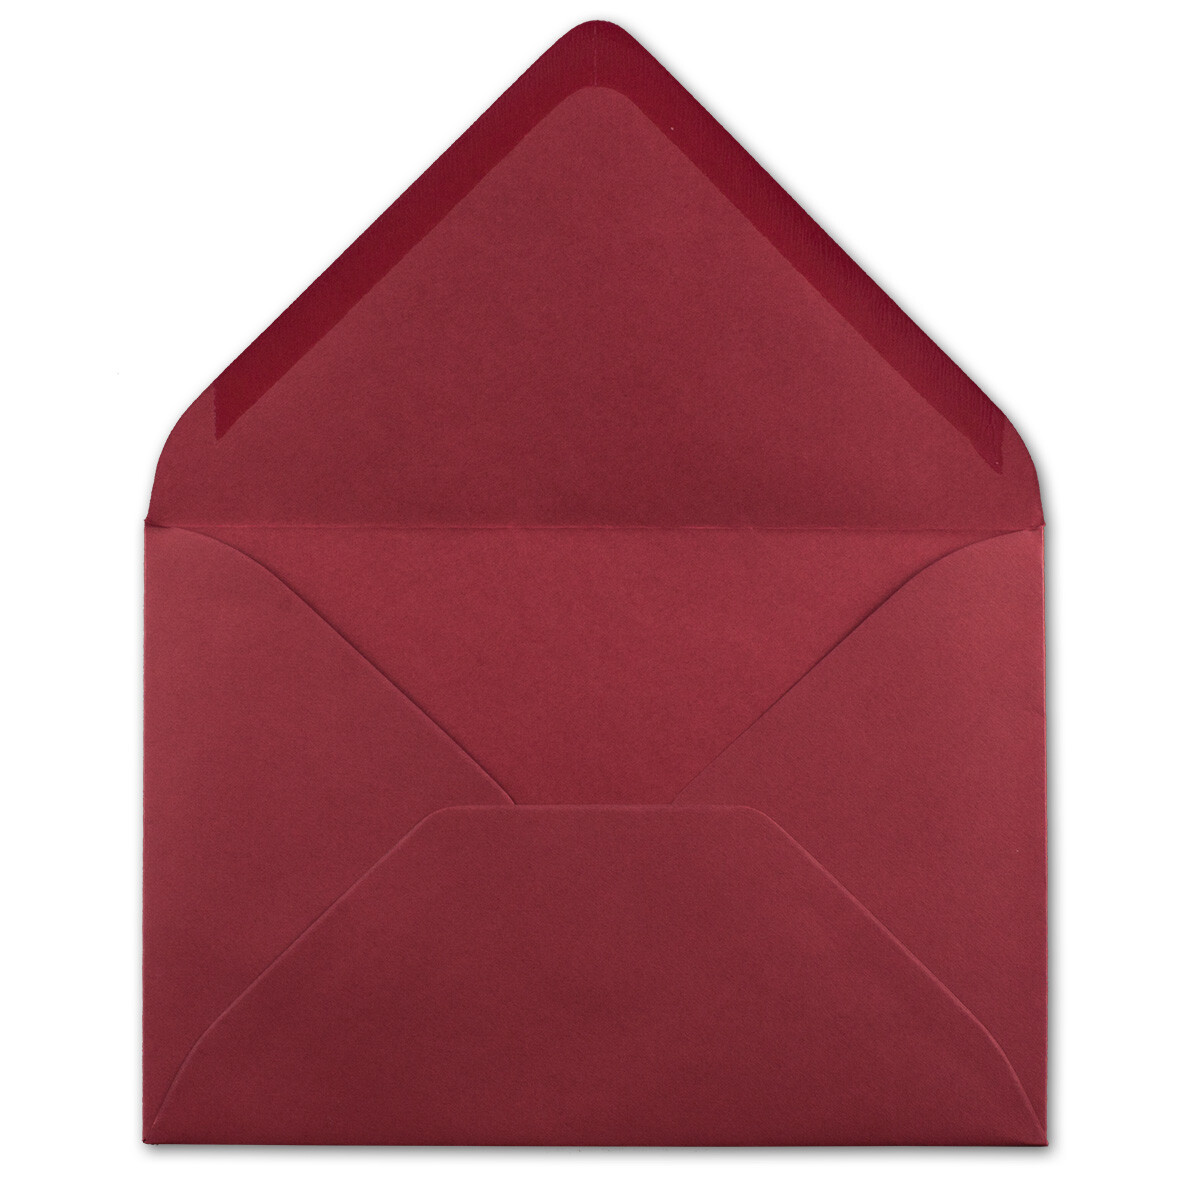 Serie FarbenFroh/® Dunkel-Rot DIN C6-114 x 162 mm Kuverts mit Nassklebung ohne Fenster f/ür Gru/ß-Karten /& Einladungen 25 Brief-Umschl/äge